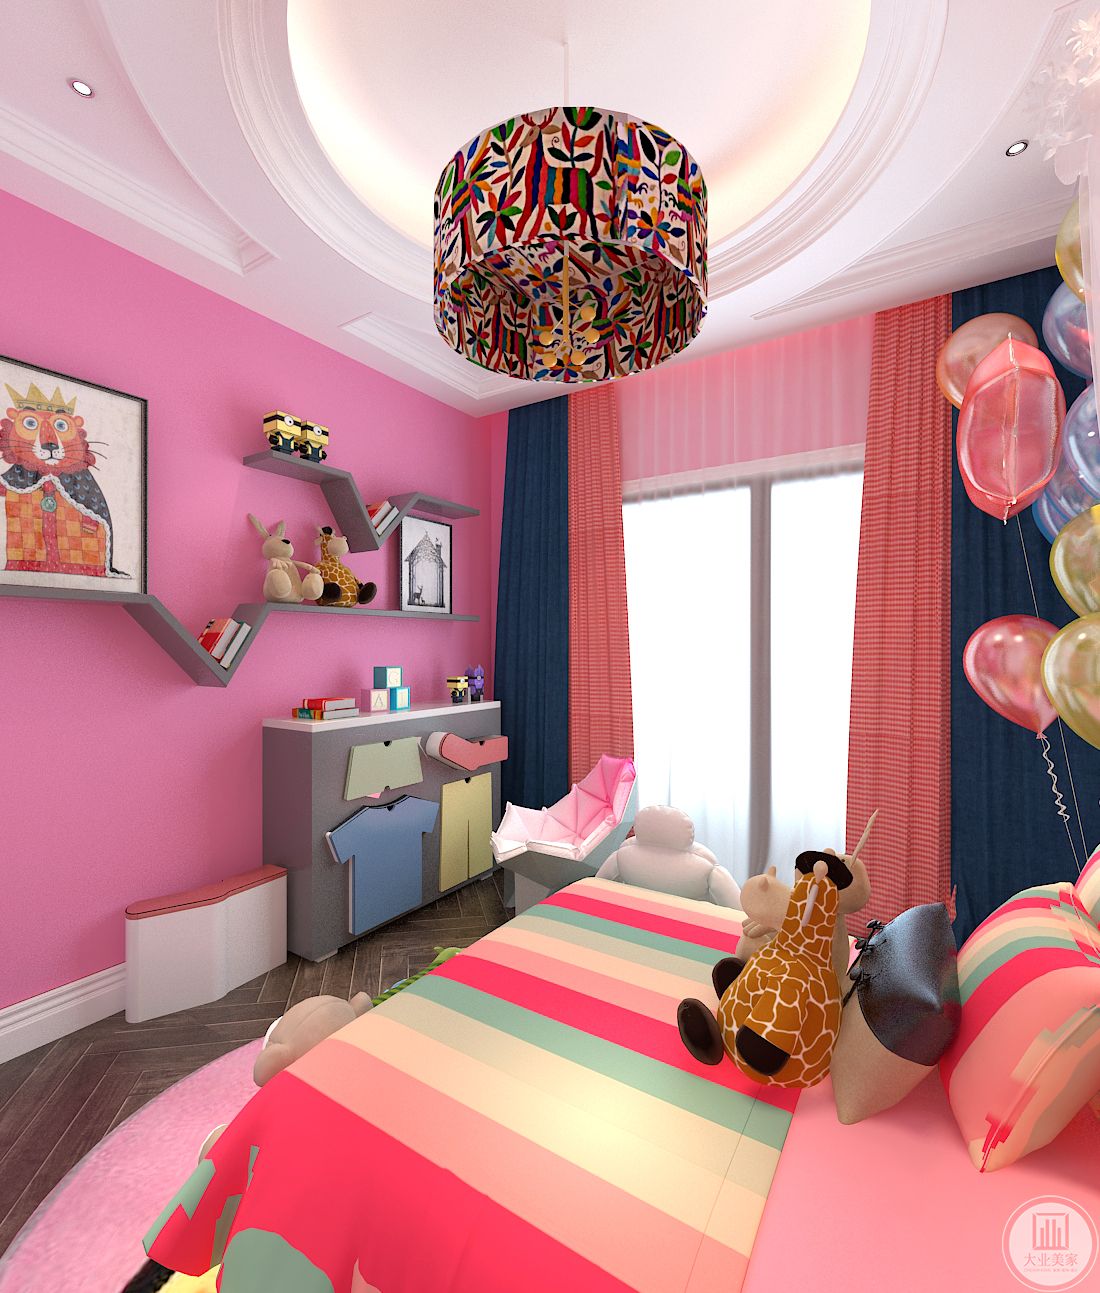 二楼 女孩房 -粉嫩软萌，女儿的房间颜色偏粉嫩系，整体框架围绕着女儿的喜好，体现了不同性别年龄阶段孩子的气质和喜好